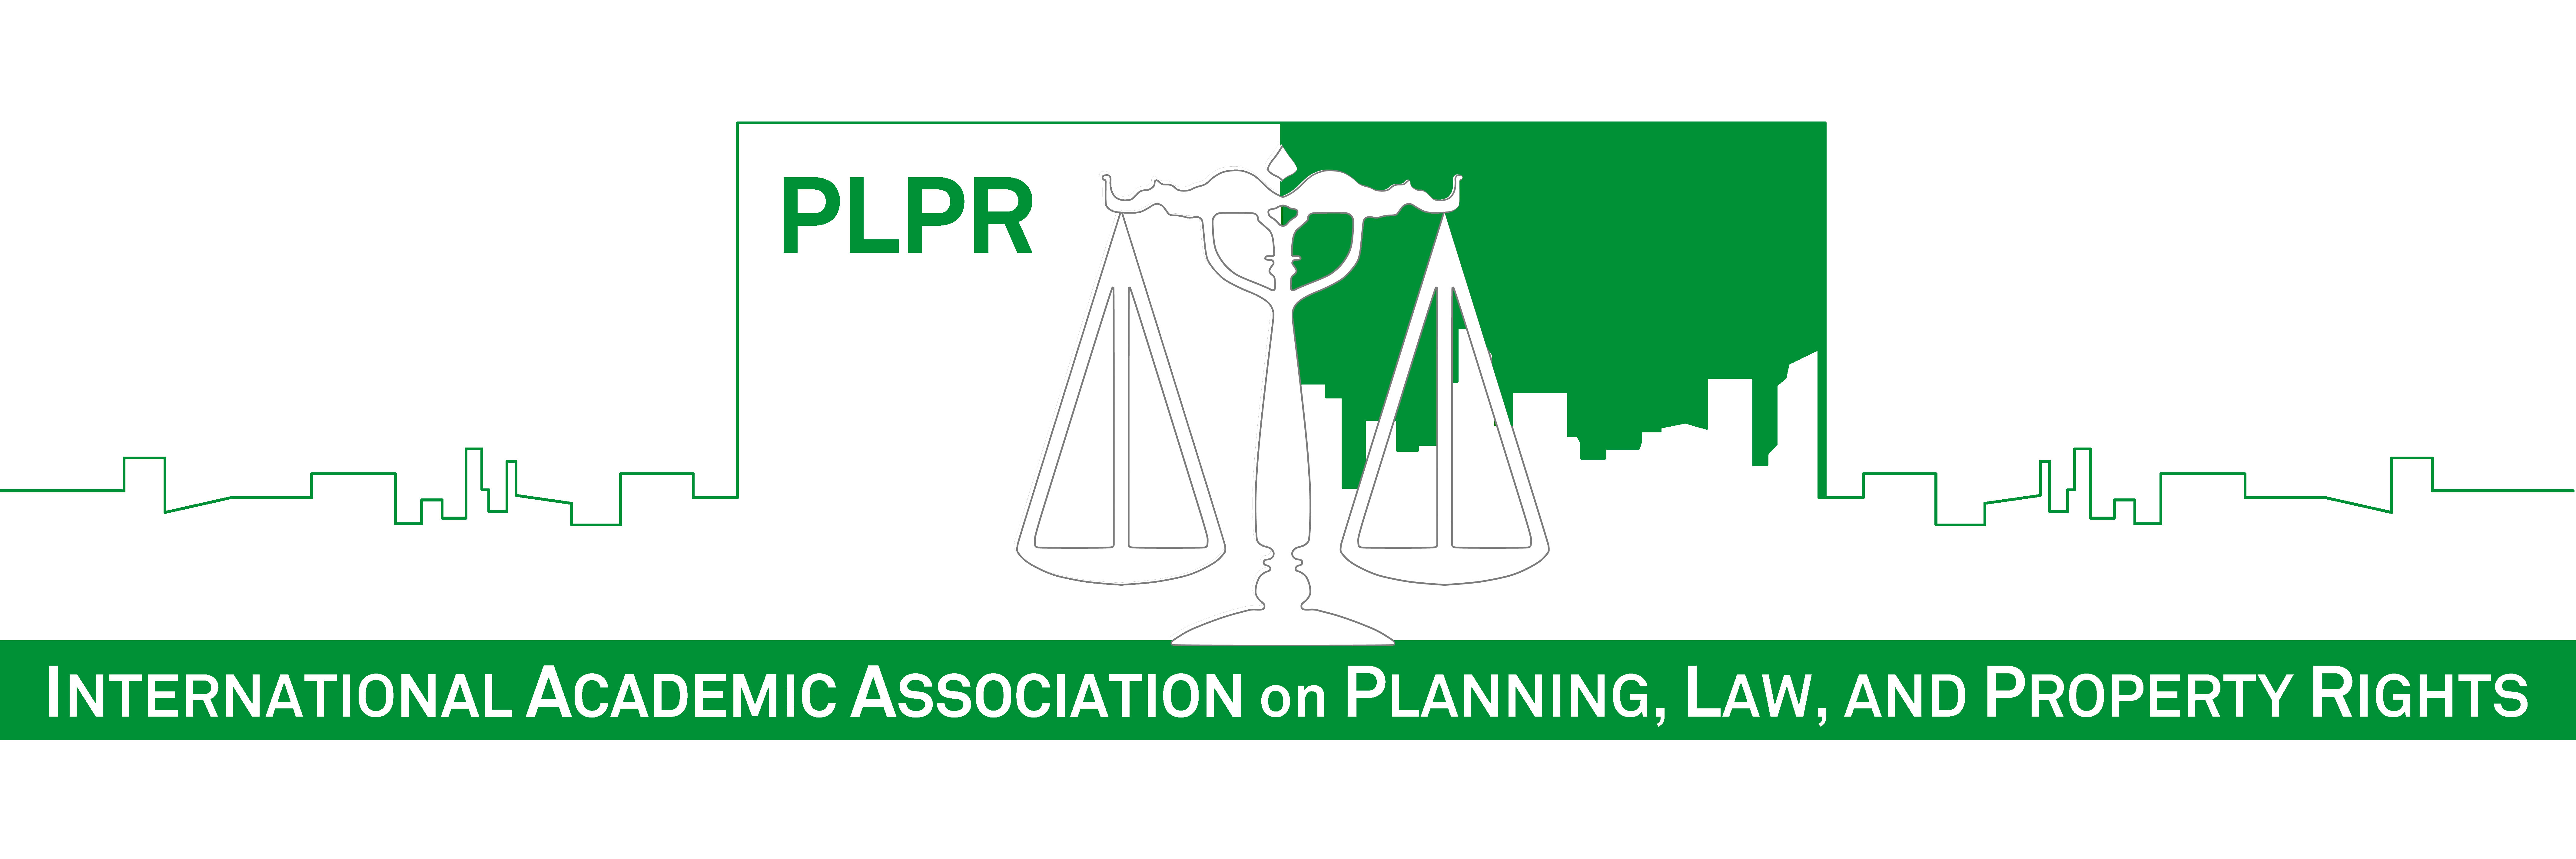 נשיאה מייסדת ועמיתת כבוד של האגודה האקדמית הבינלאומית לתכנון, משפט, וזכויות קניין – PLPR –<br />
International Academic Association on Planning, Law and Property Rights – לחצו כאן לאתר. 